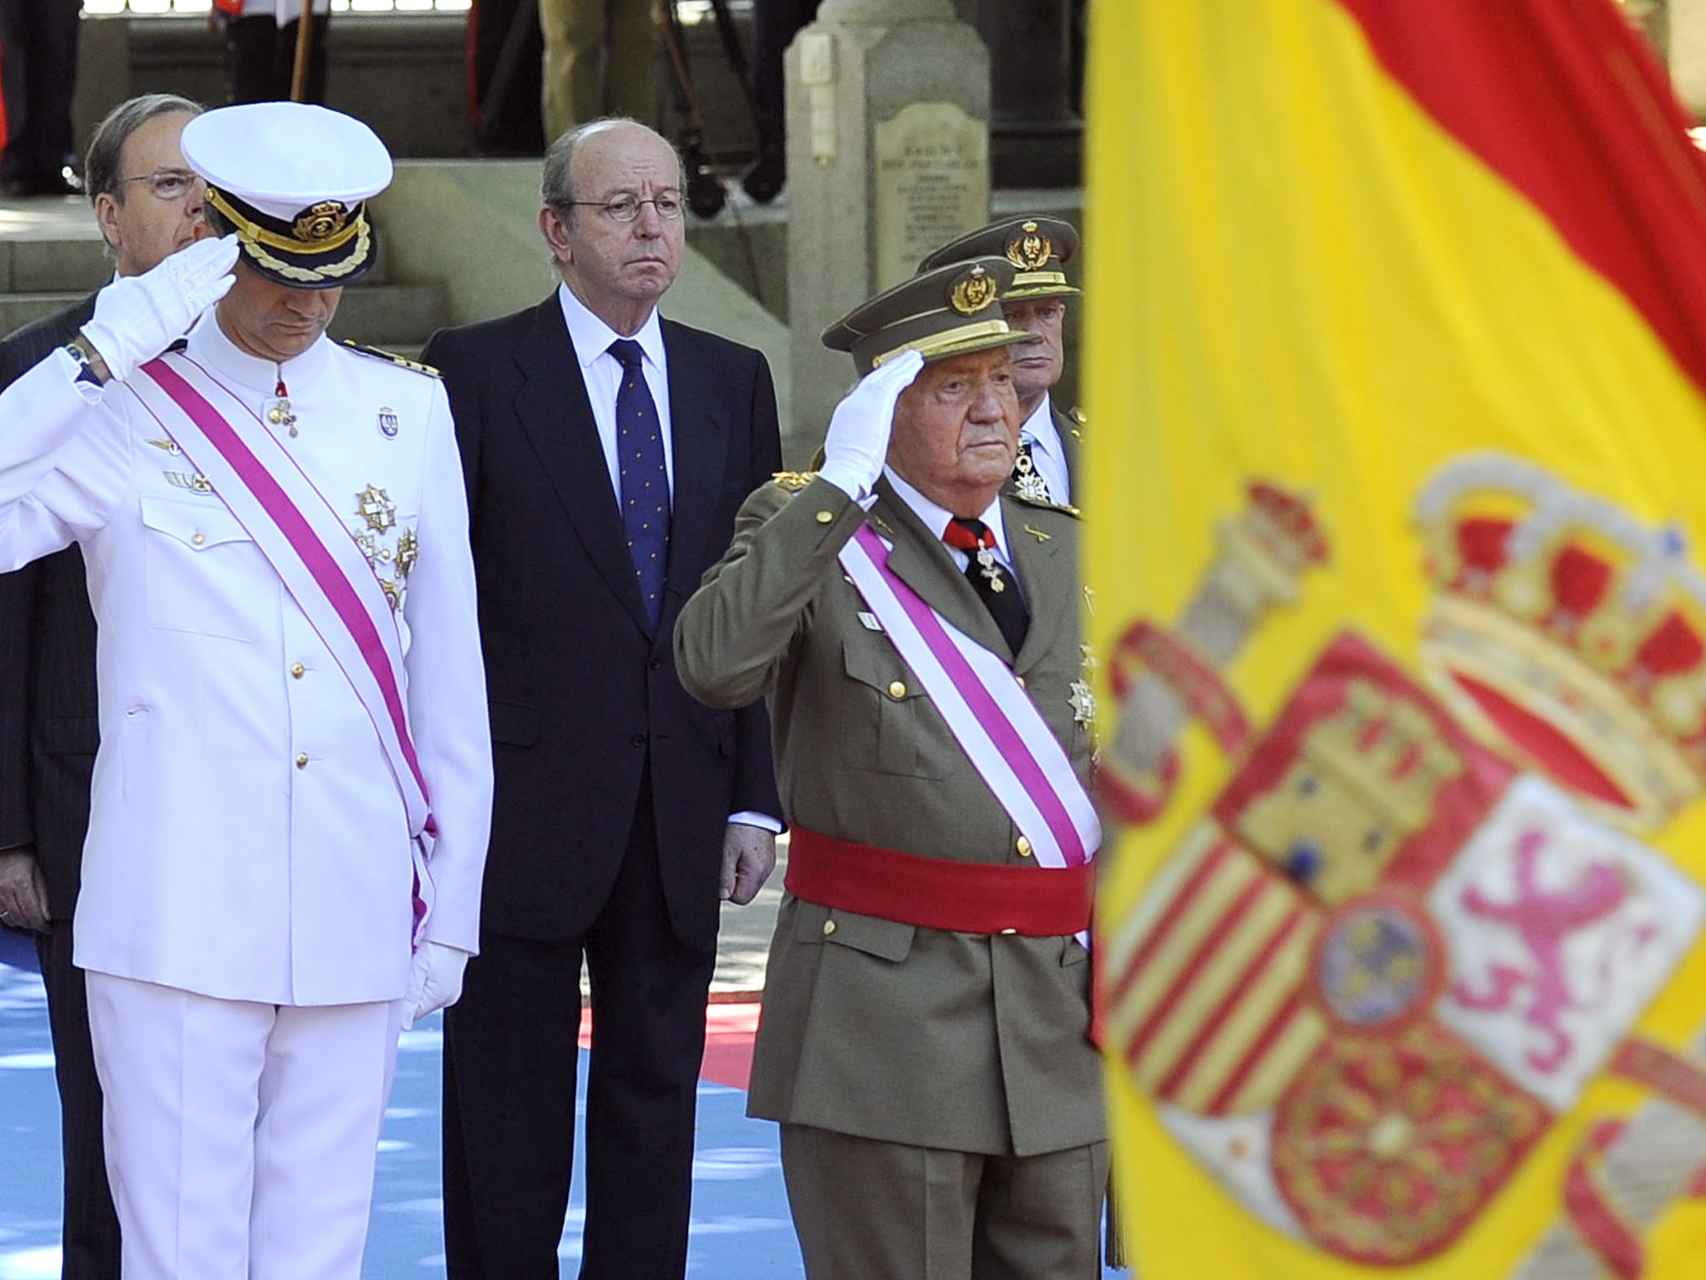 El Rey de España Juan Carlos I con el Príncipe de Asturias y el Jefe de la Casa Real Rafael Spottorno/Gtres